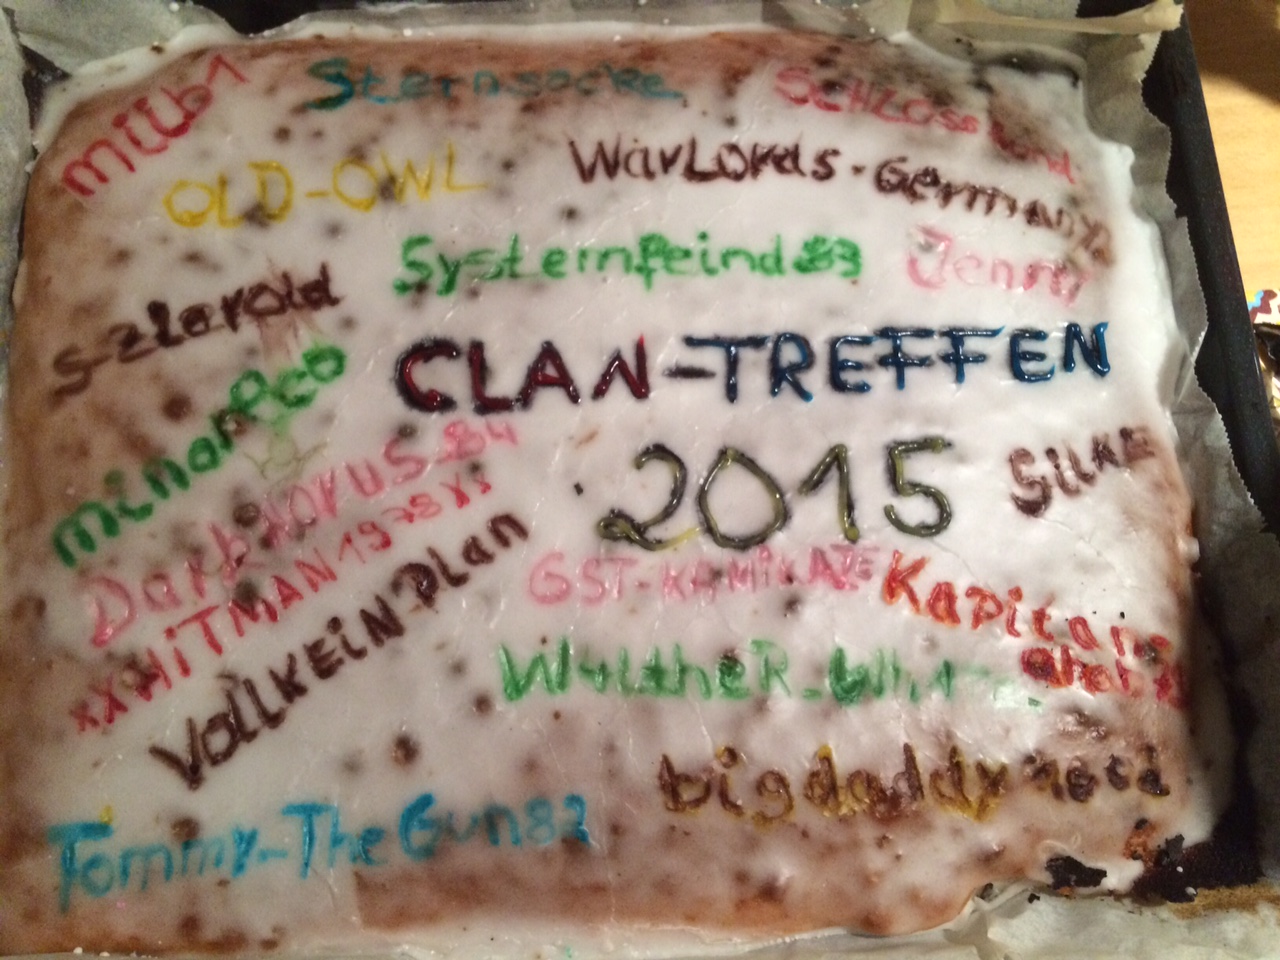 Clantreffen 2015